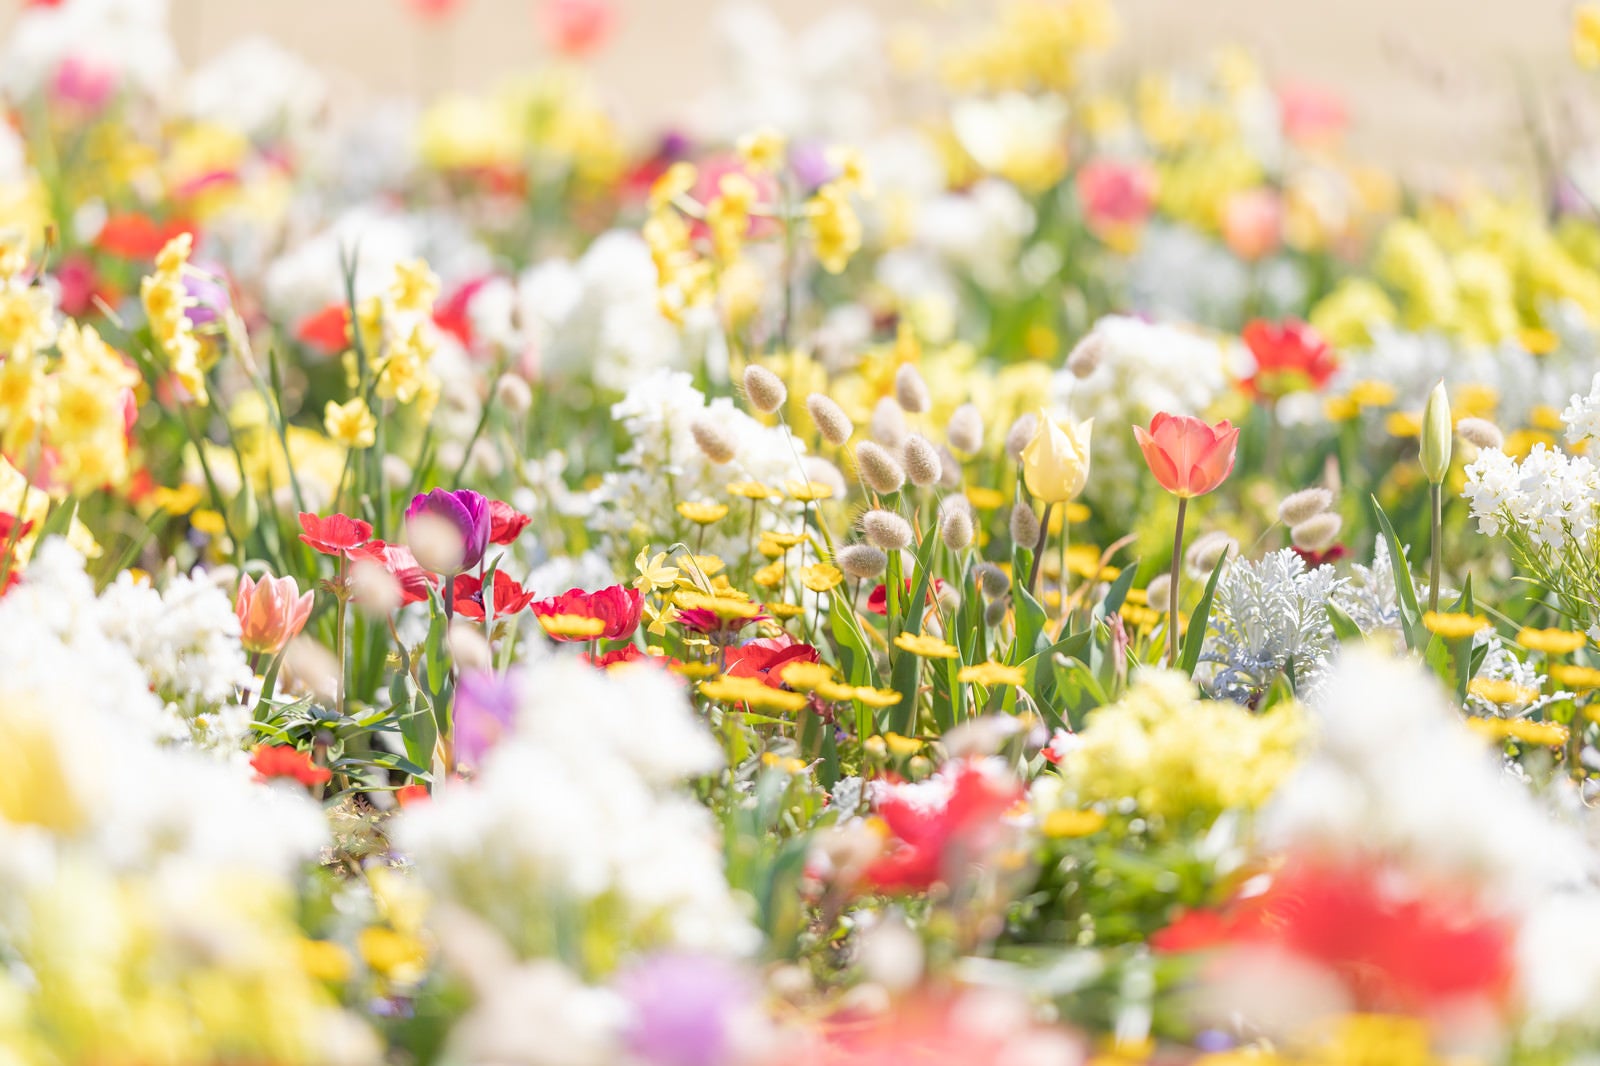 「春に咲くガーデニングの様子」の写真